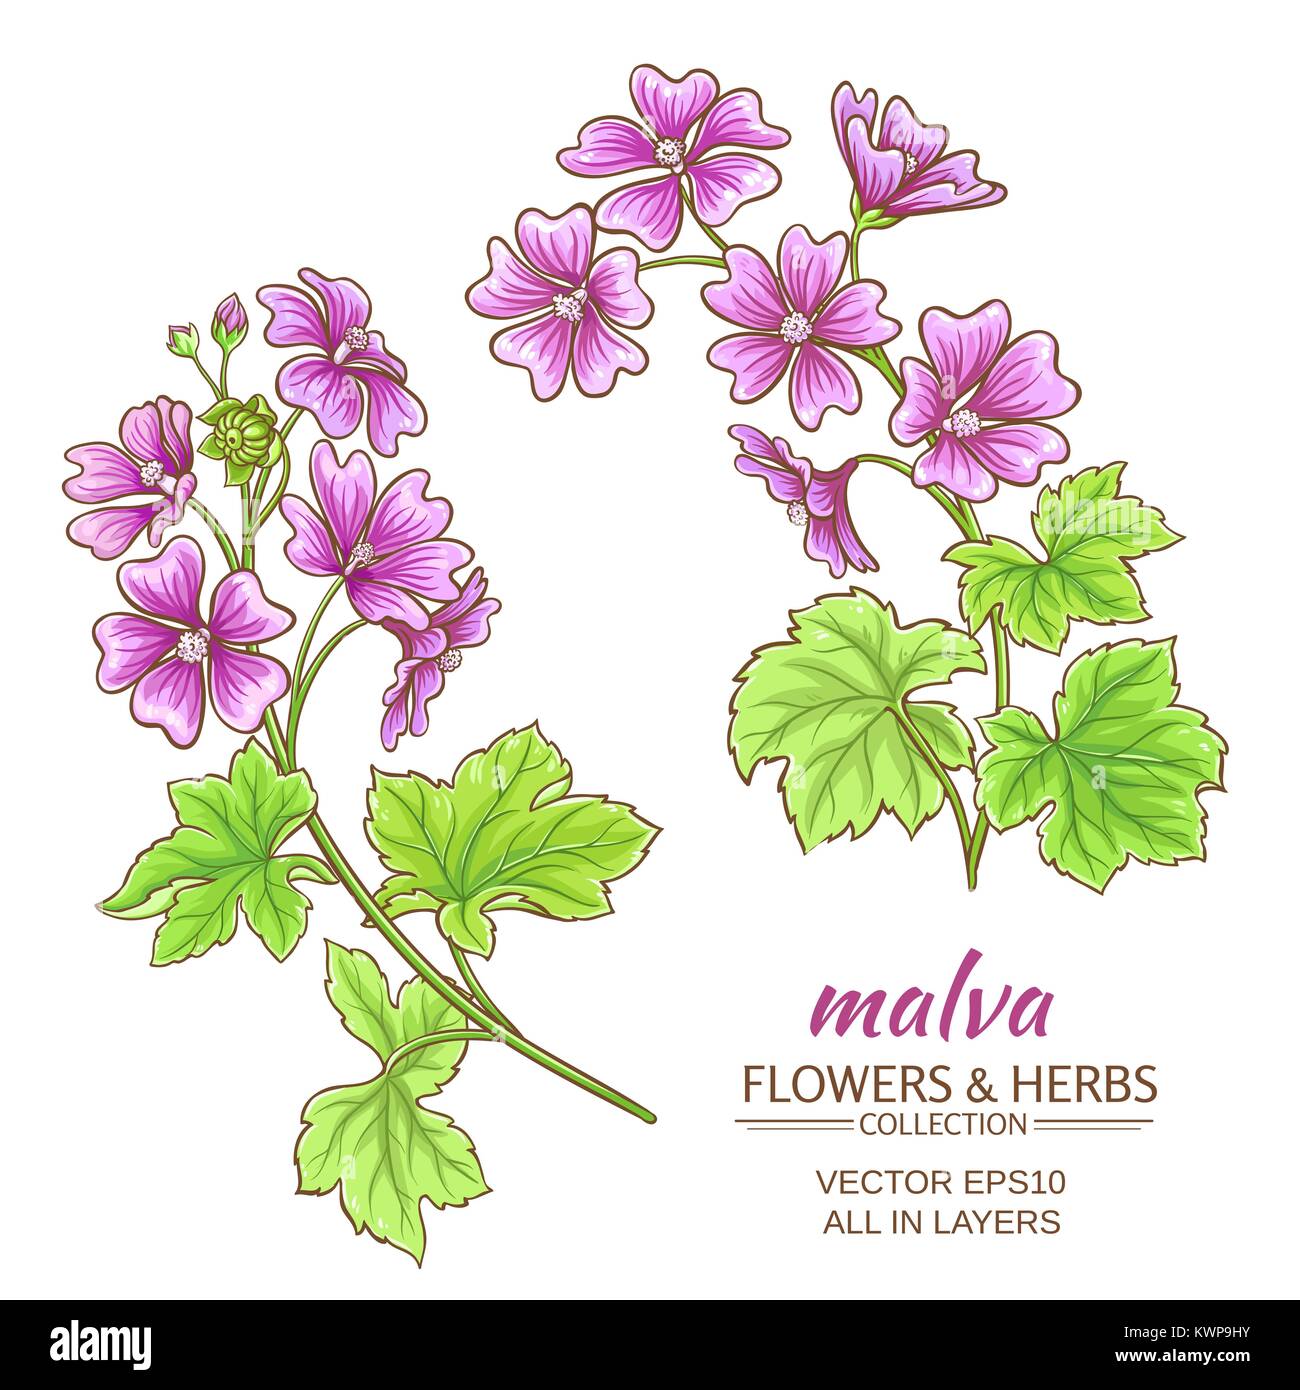 malva flowers vector set on white background Stock Vector